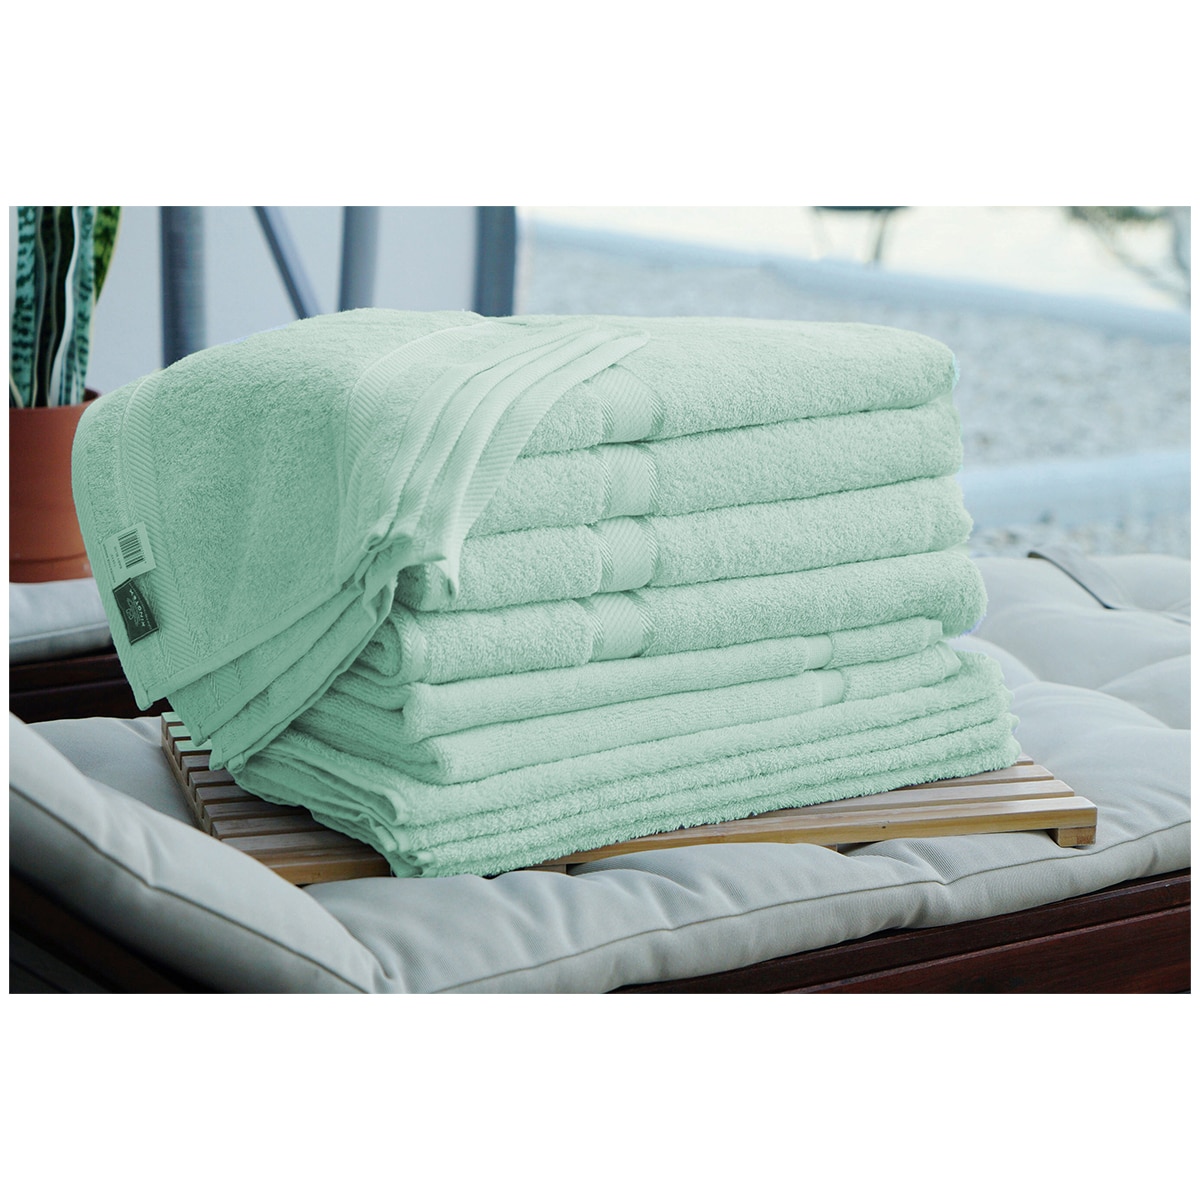 Kingtex Plain dyed 100% Combed Cotton towel range 550gsm Bath Sheet set 14 piece - Frost